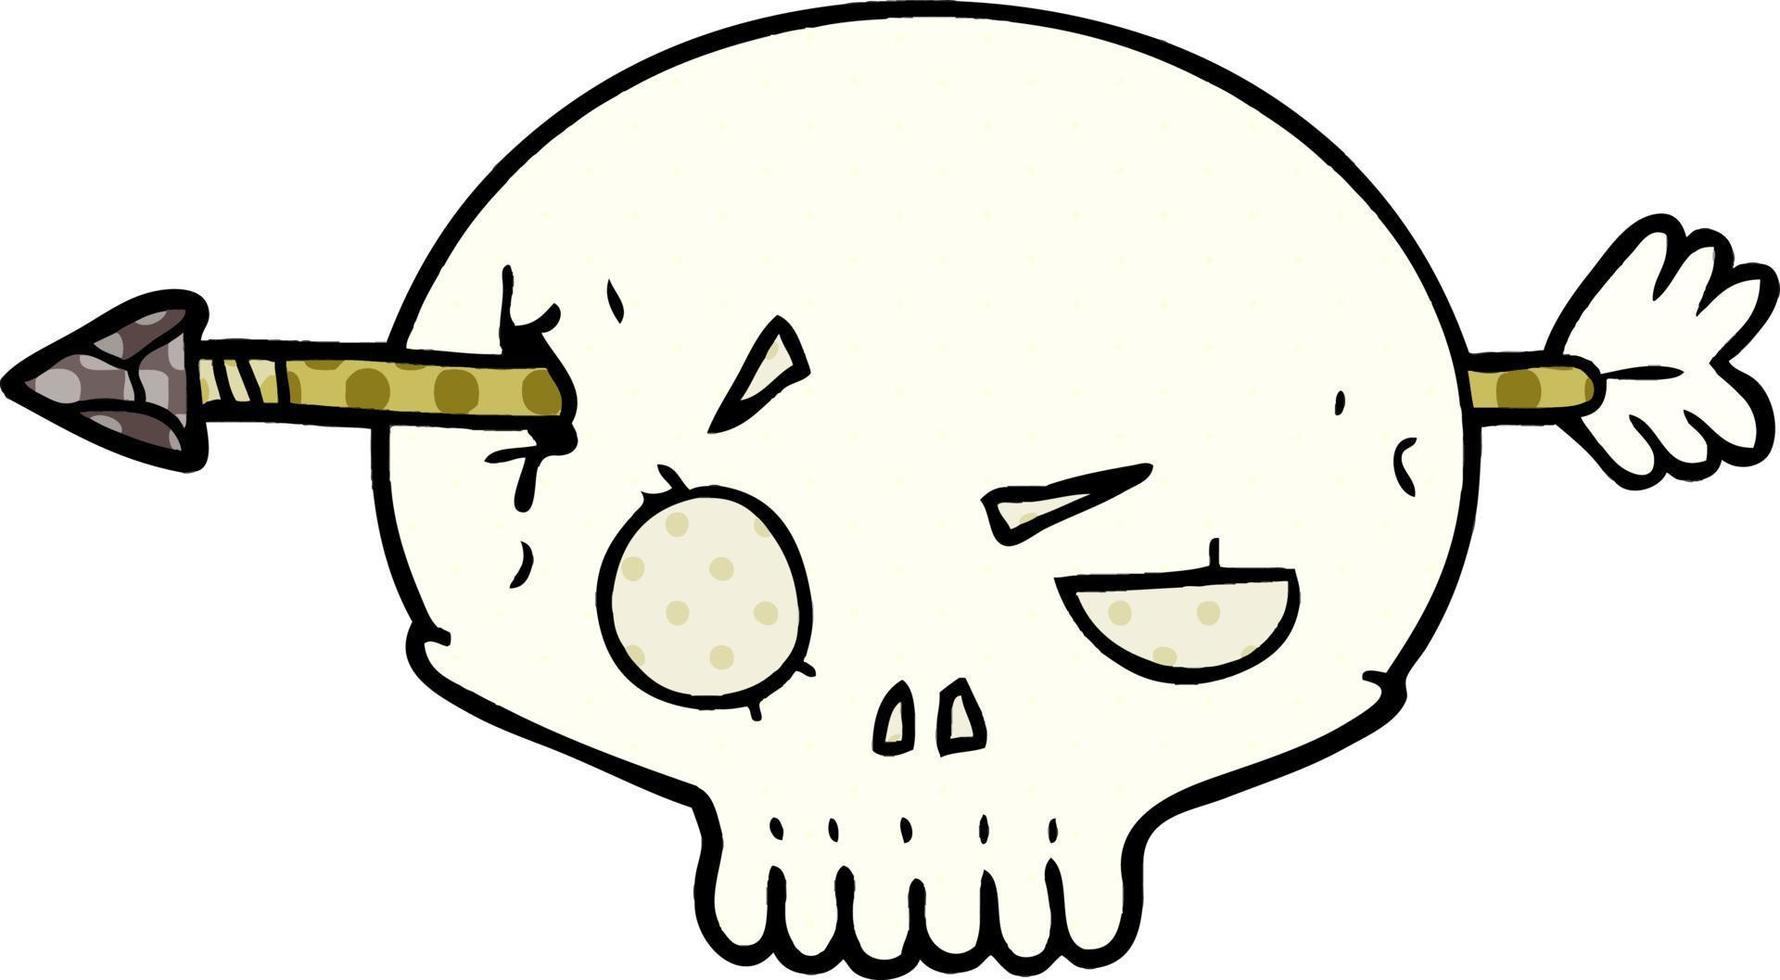 crâne de dessin animé traversé par une flèche vecteur